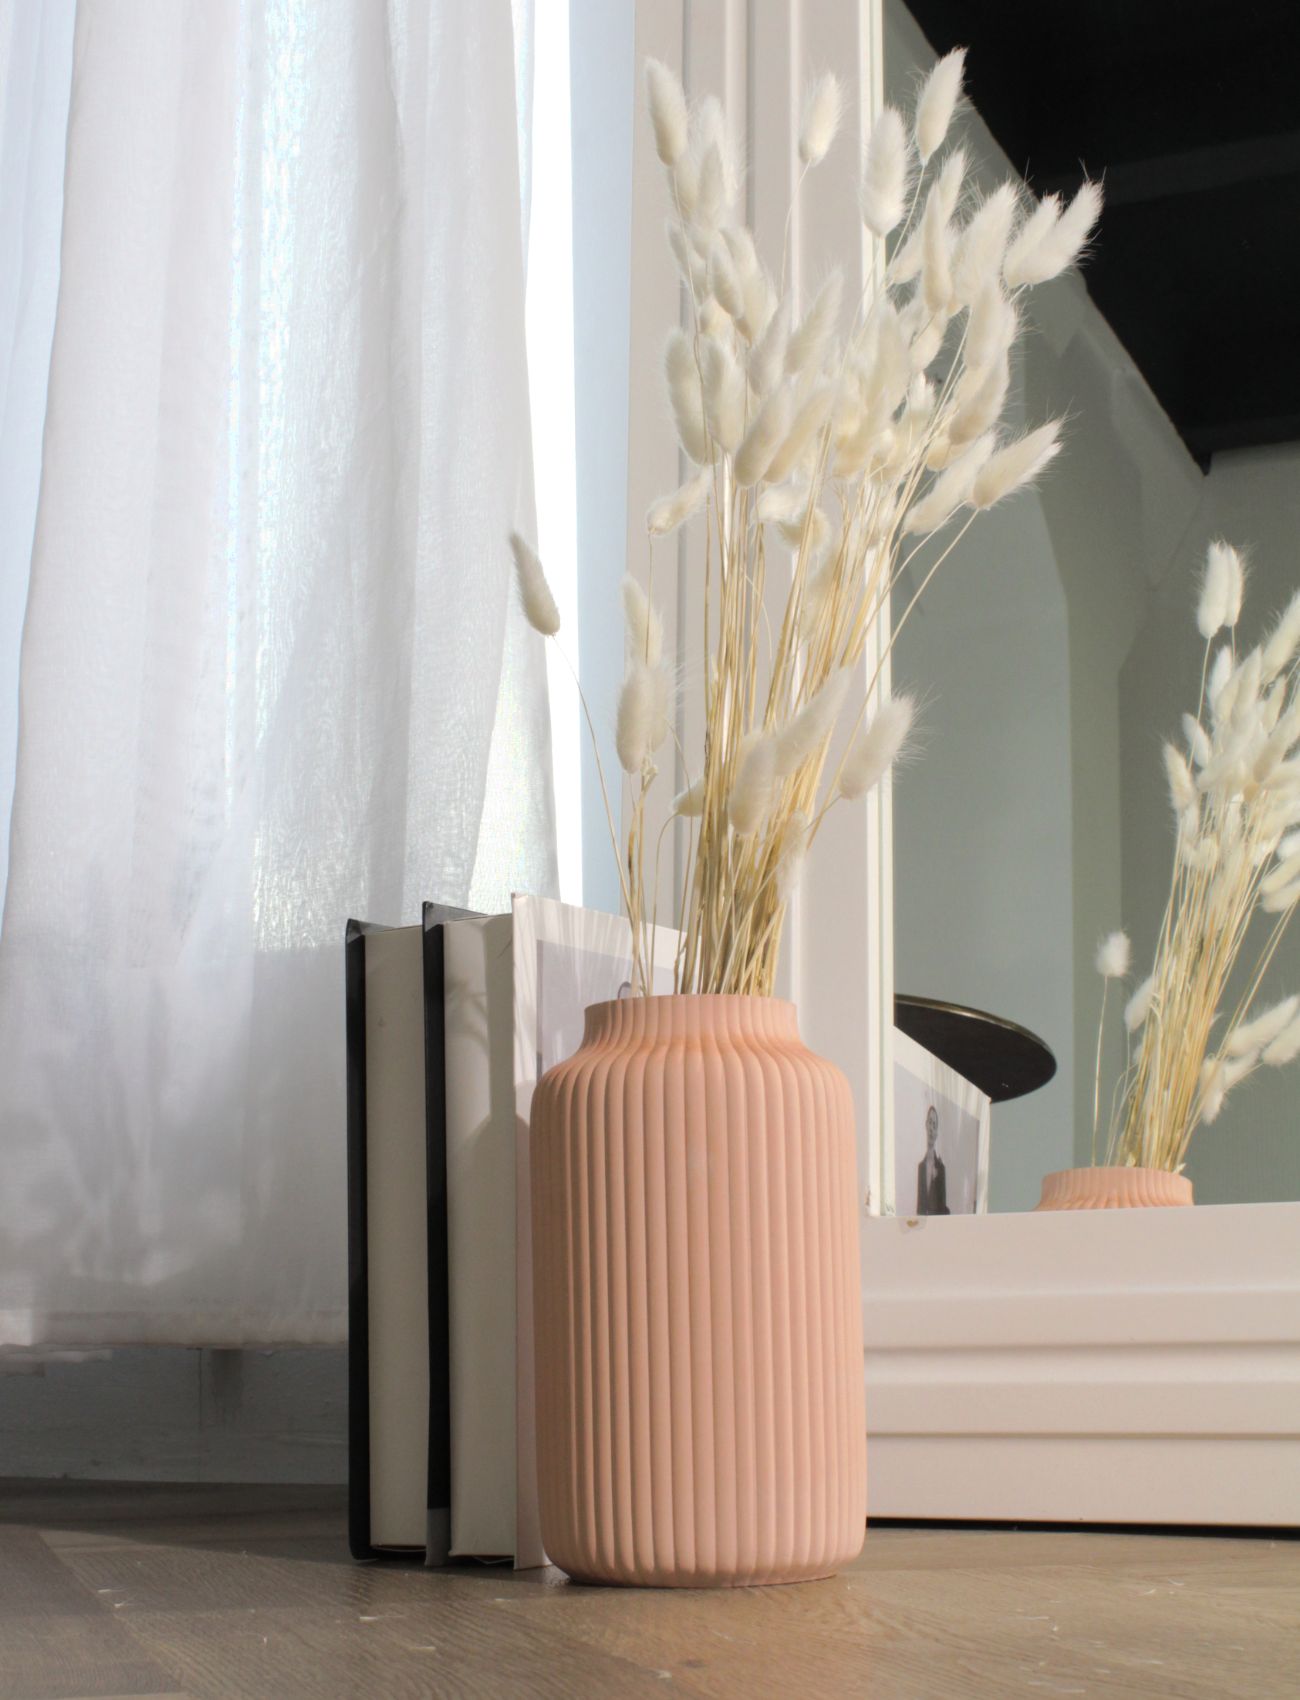 STILREN ваза для растений из керамогранита ИКЕА